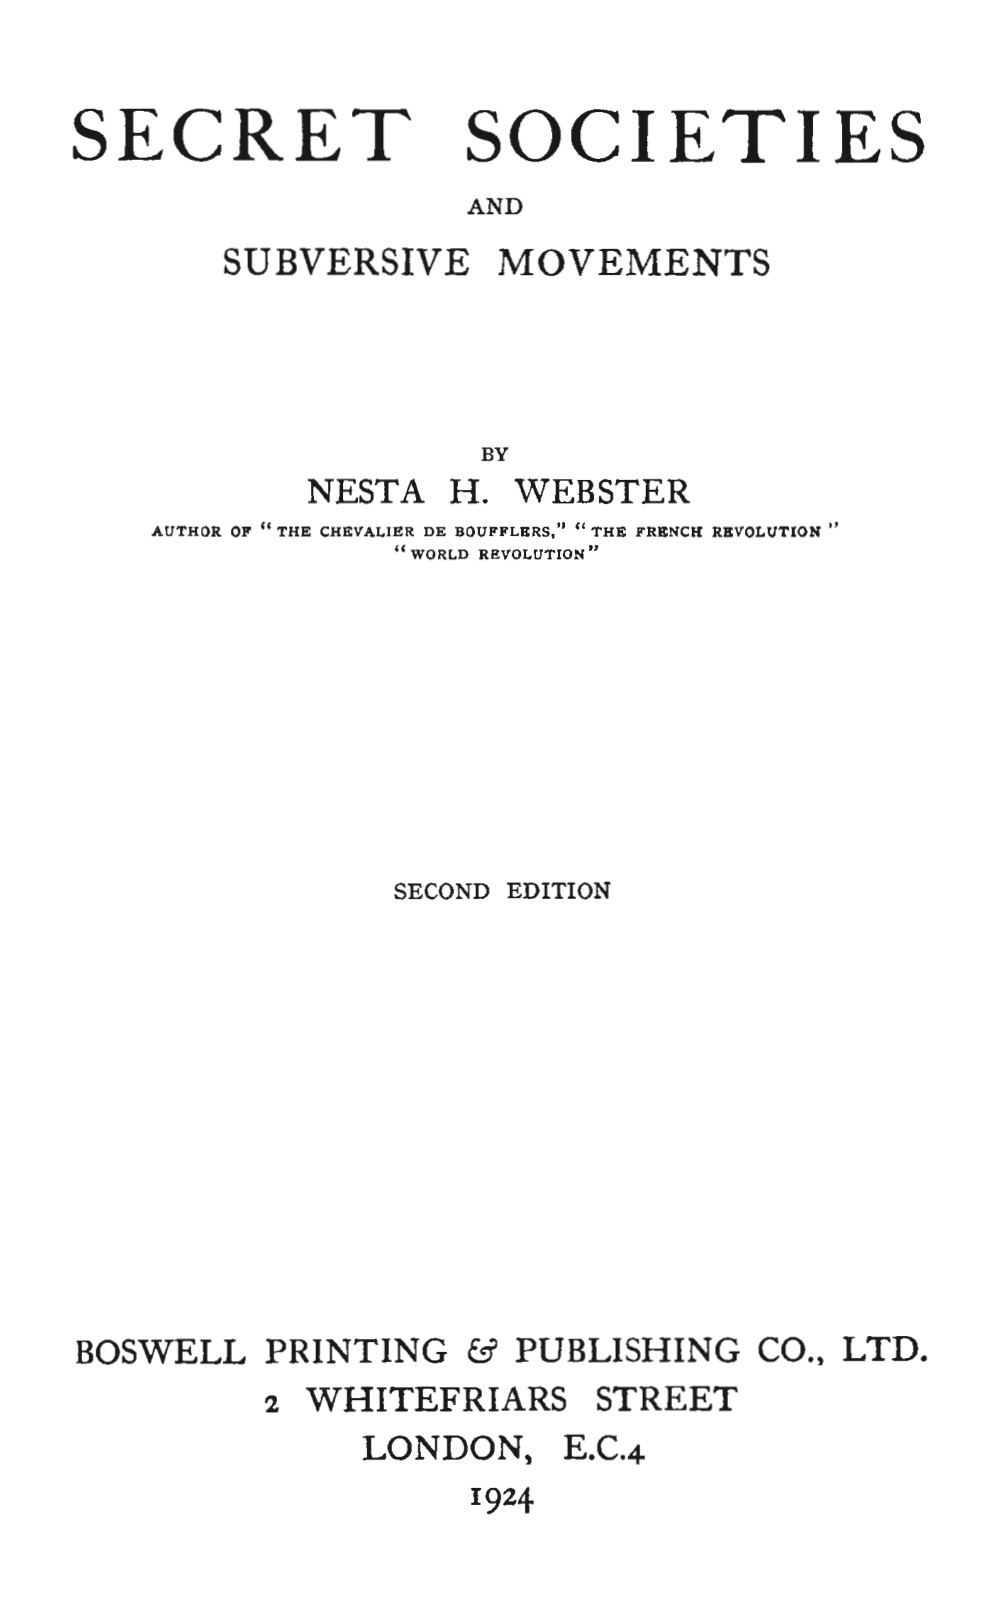 Secret Societies and Subversive Movements (1924) by Nesta Helen Webster